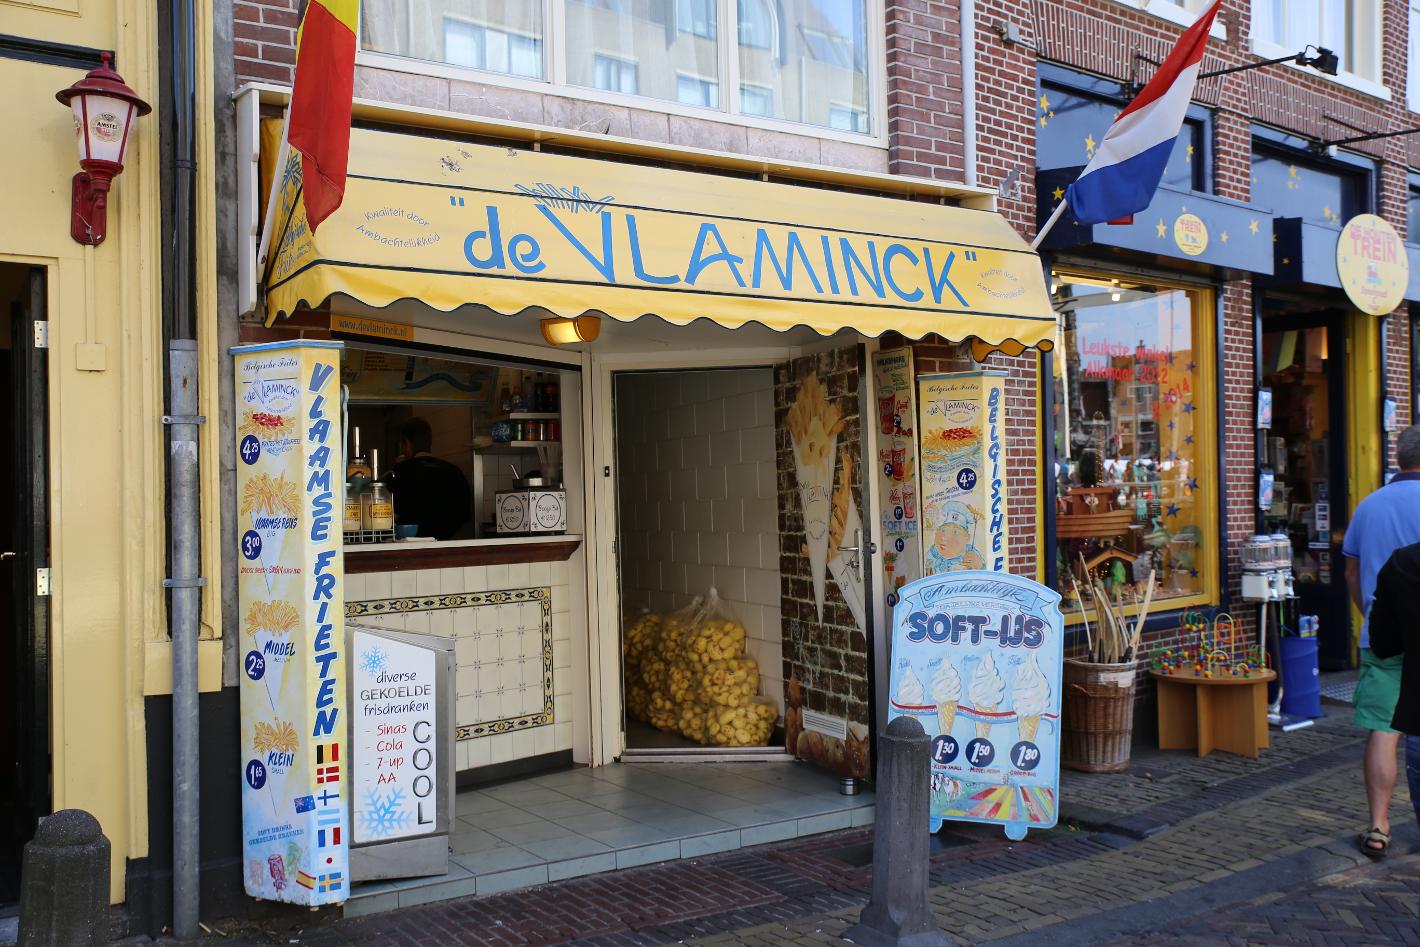 Foto Friethuis De Vlaminck in Alkmaar, Essen & Trinken, Snack & dazwischen - #2